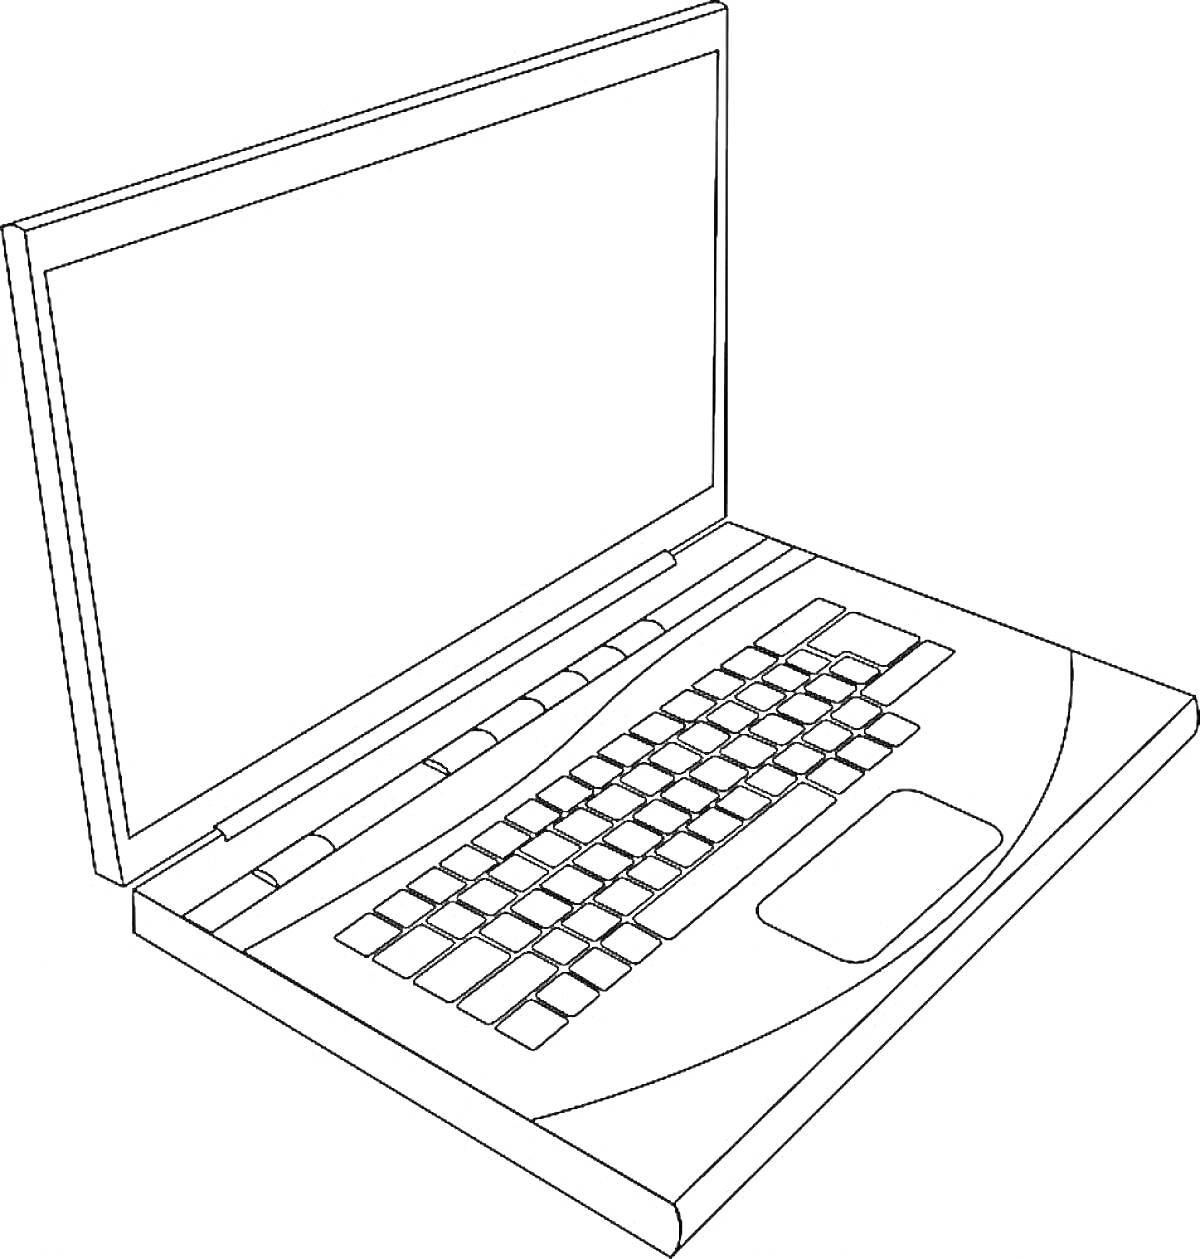 Ноутбук с экраном, клавиатурой и тачпадом